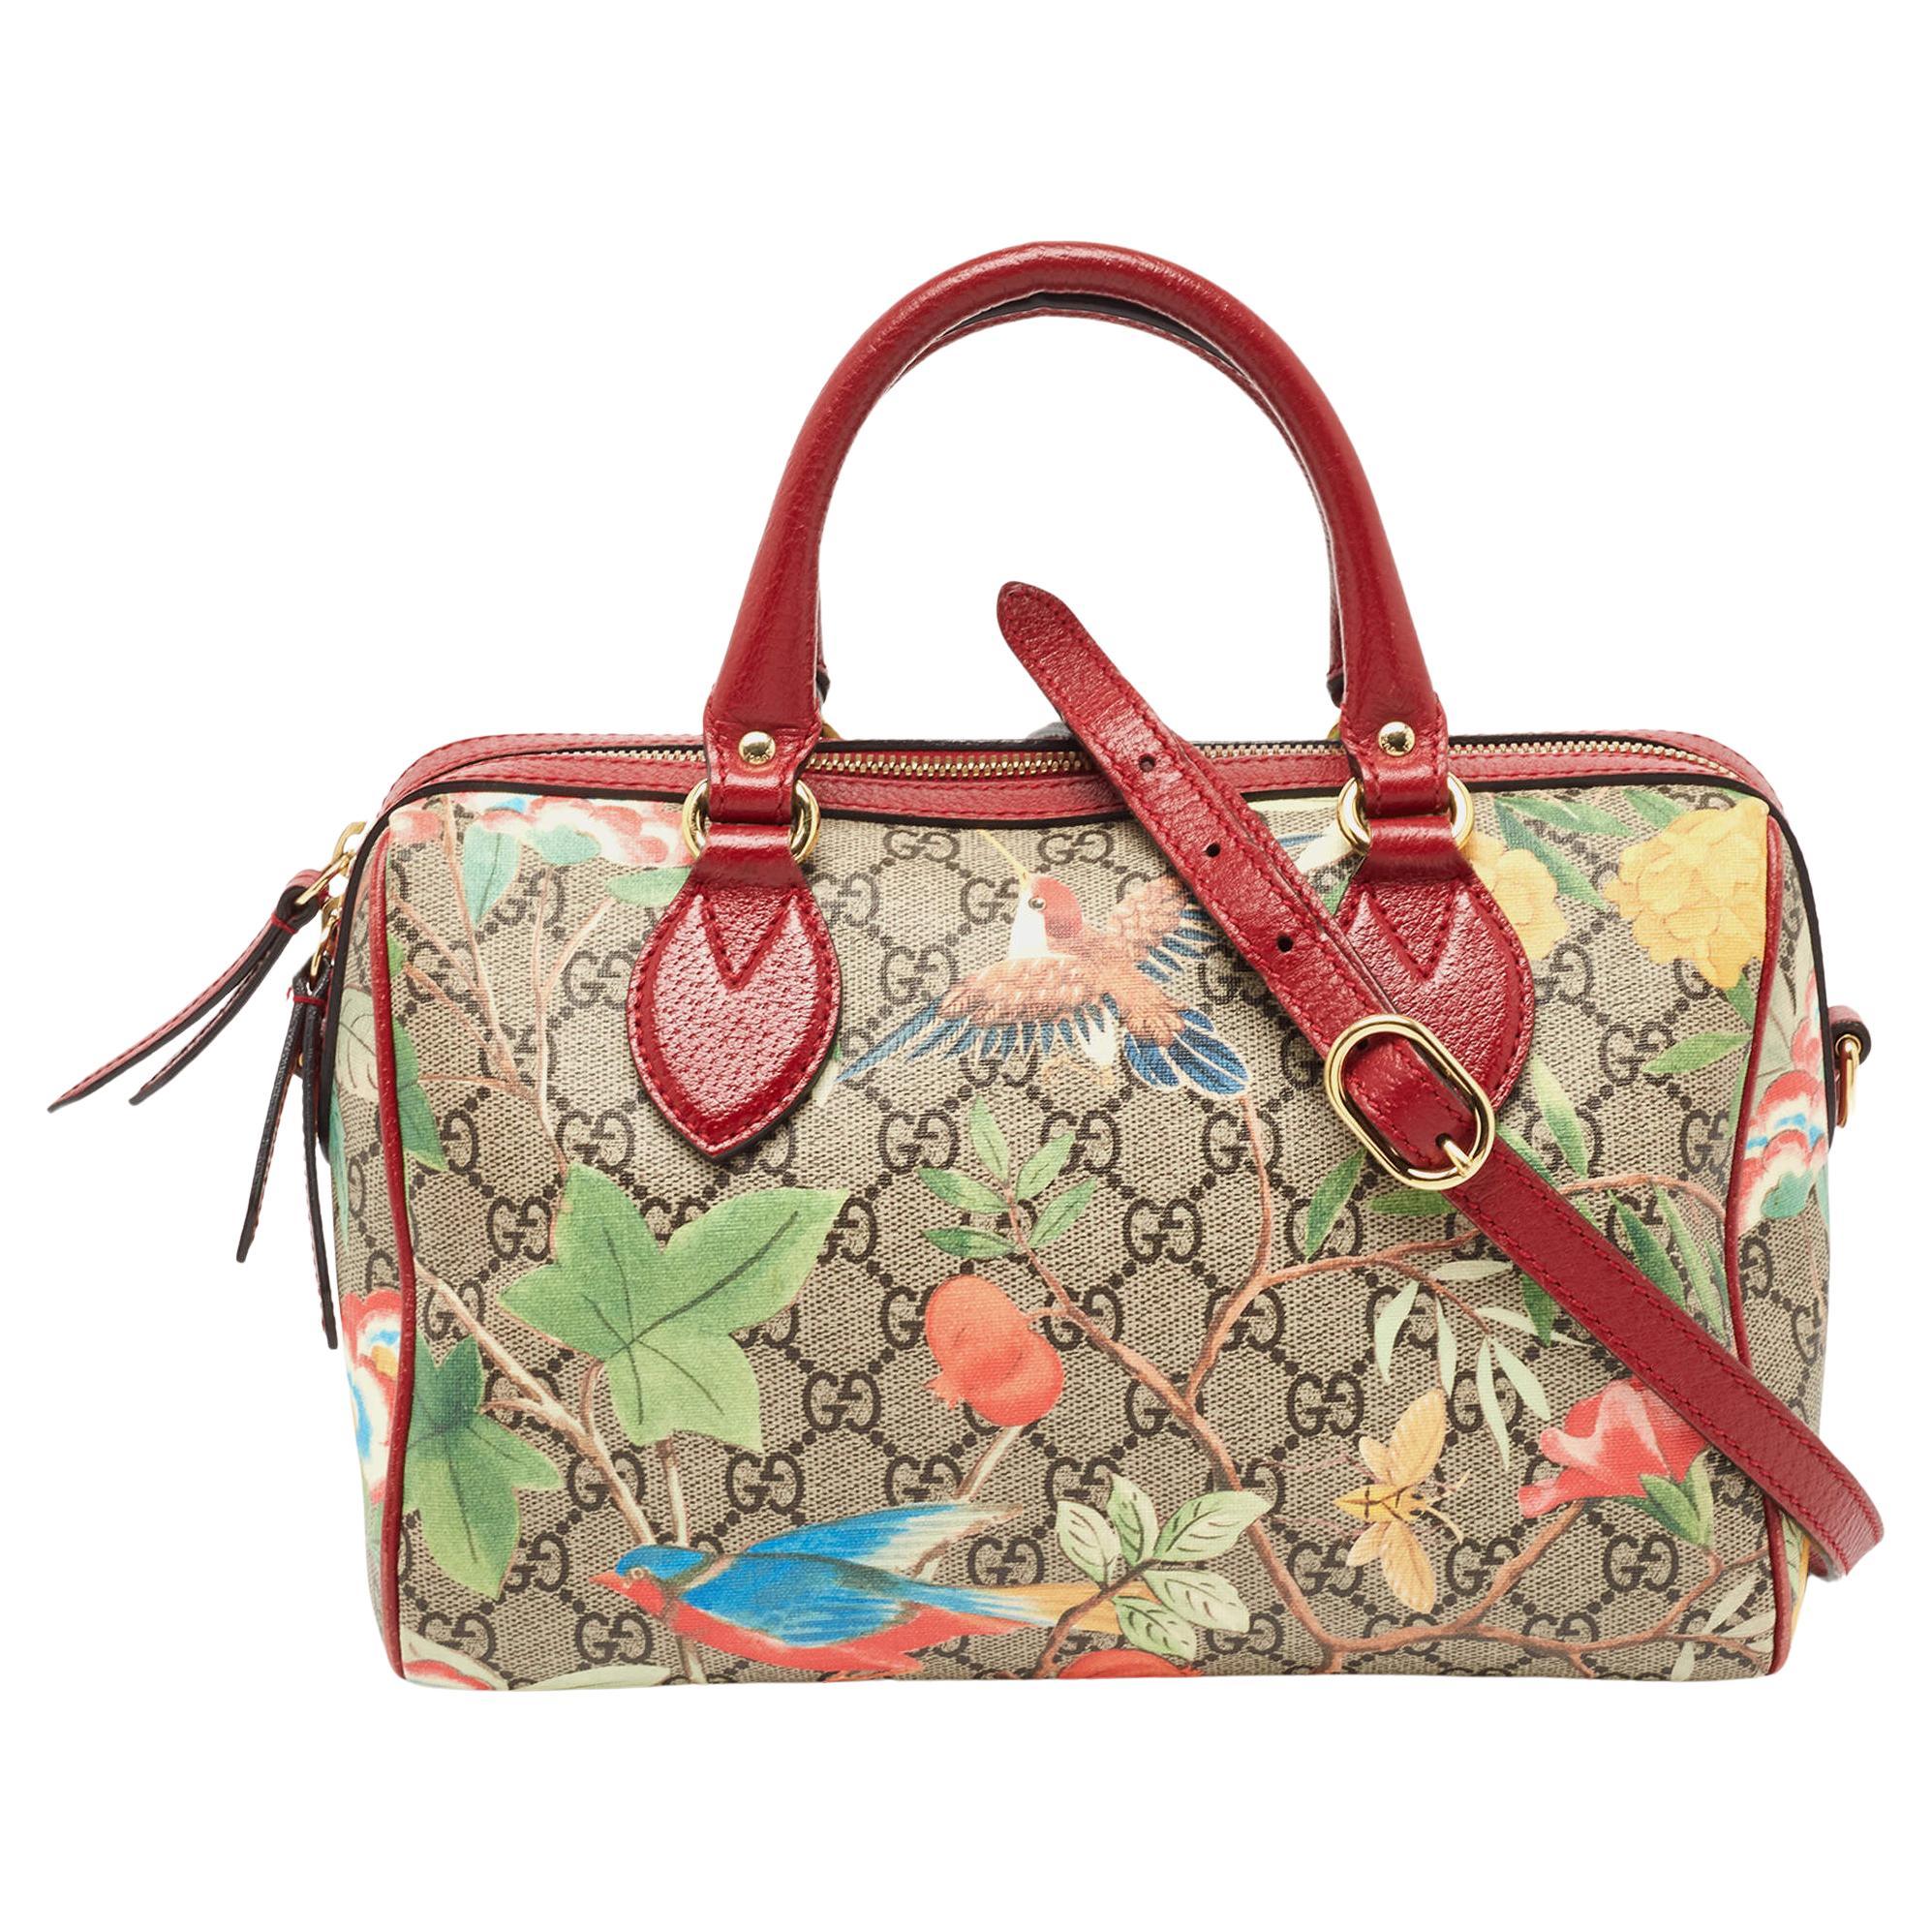 Gucci Multicolor GG Supreme Canvas and Leather Small Tian Boston Bag